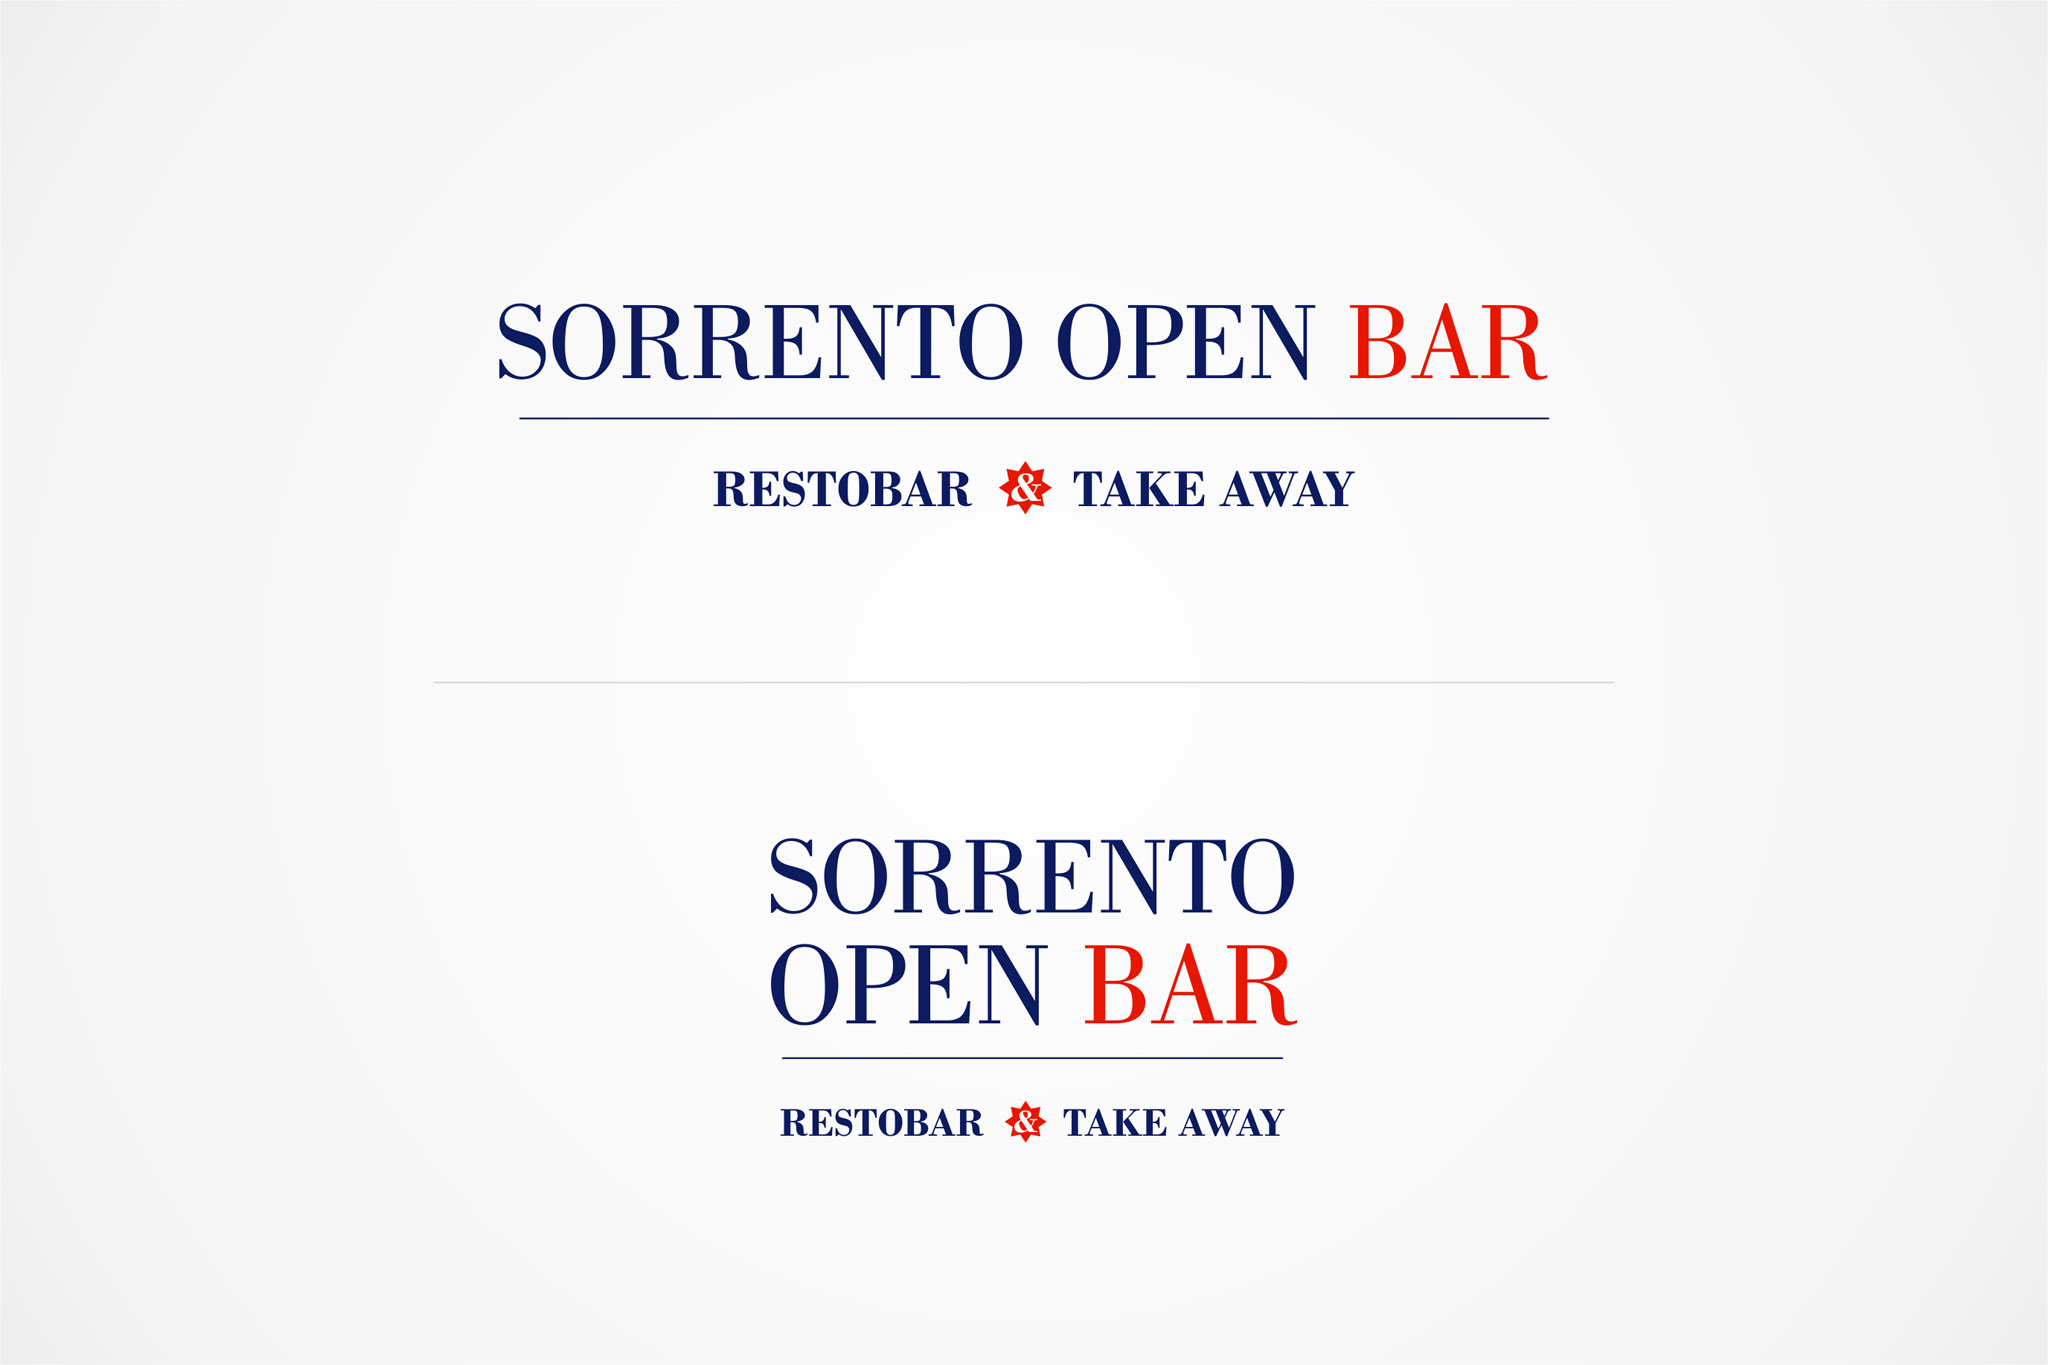 Sorrento Open Bar